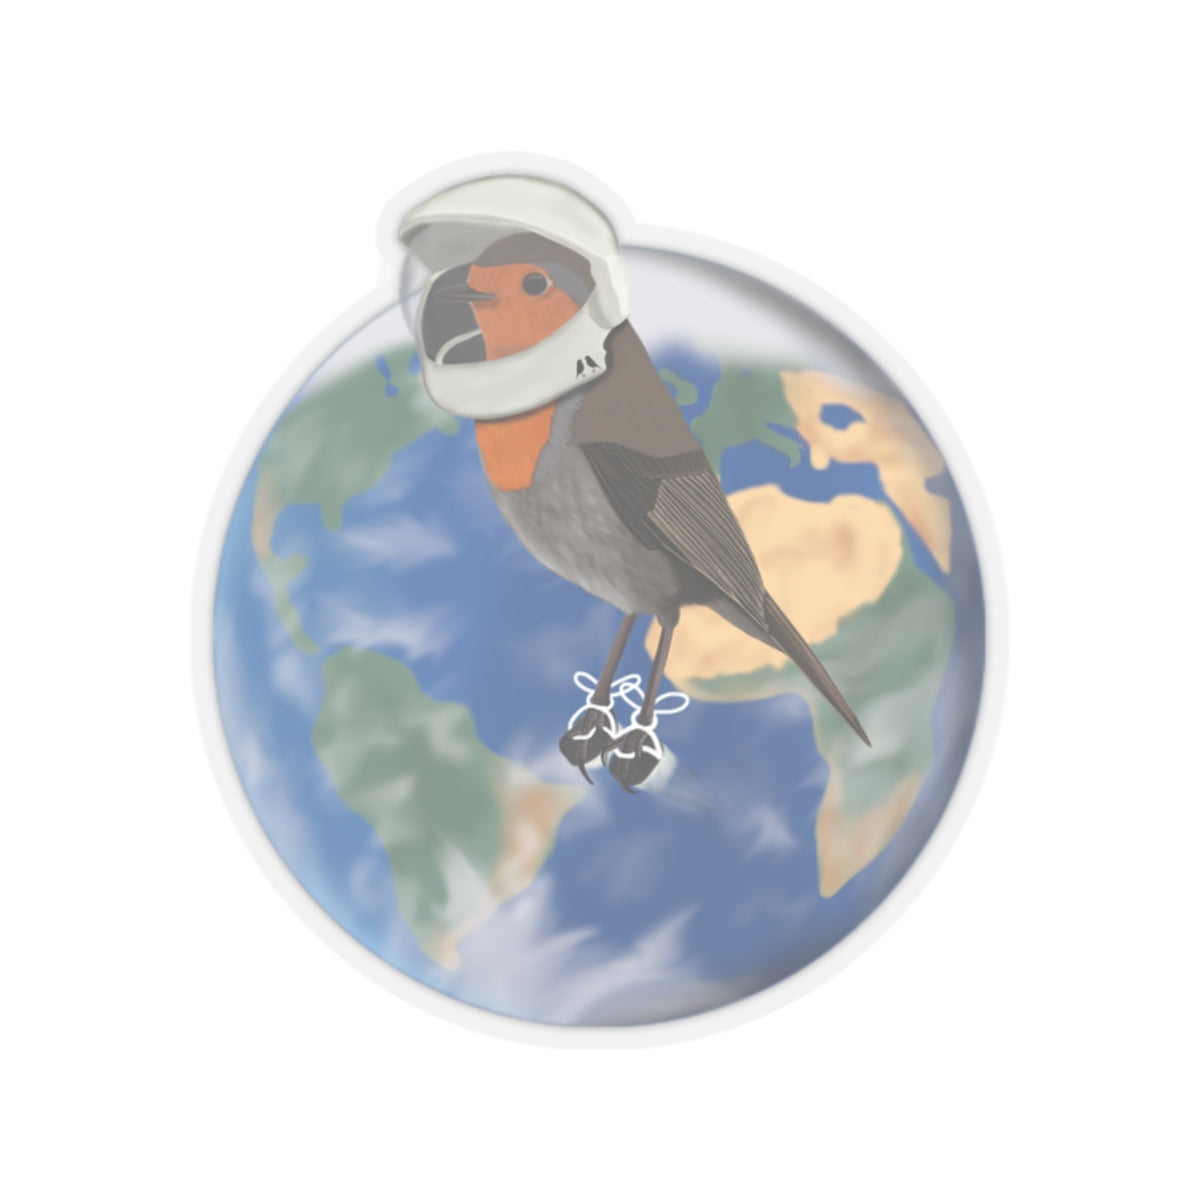 Robin Bird in Space as an Astronaut Kiss-Cut Sticker